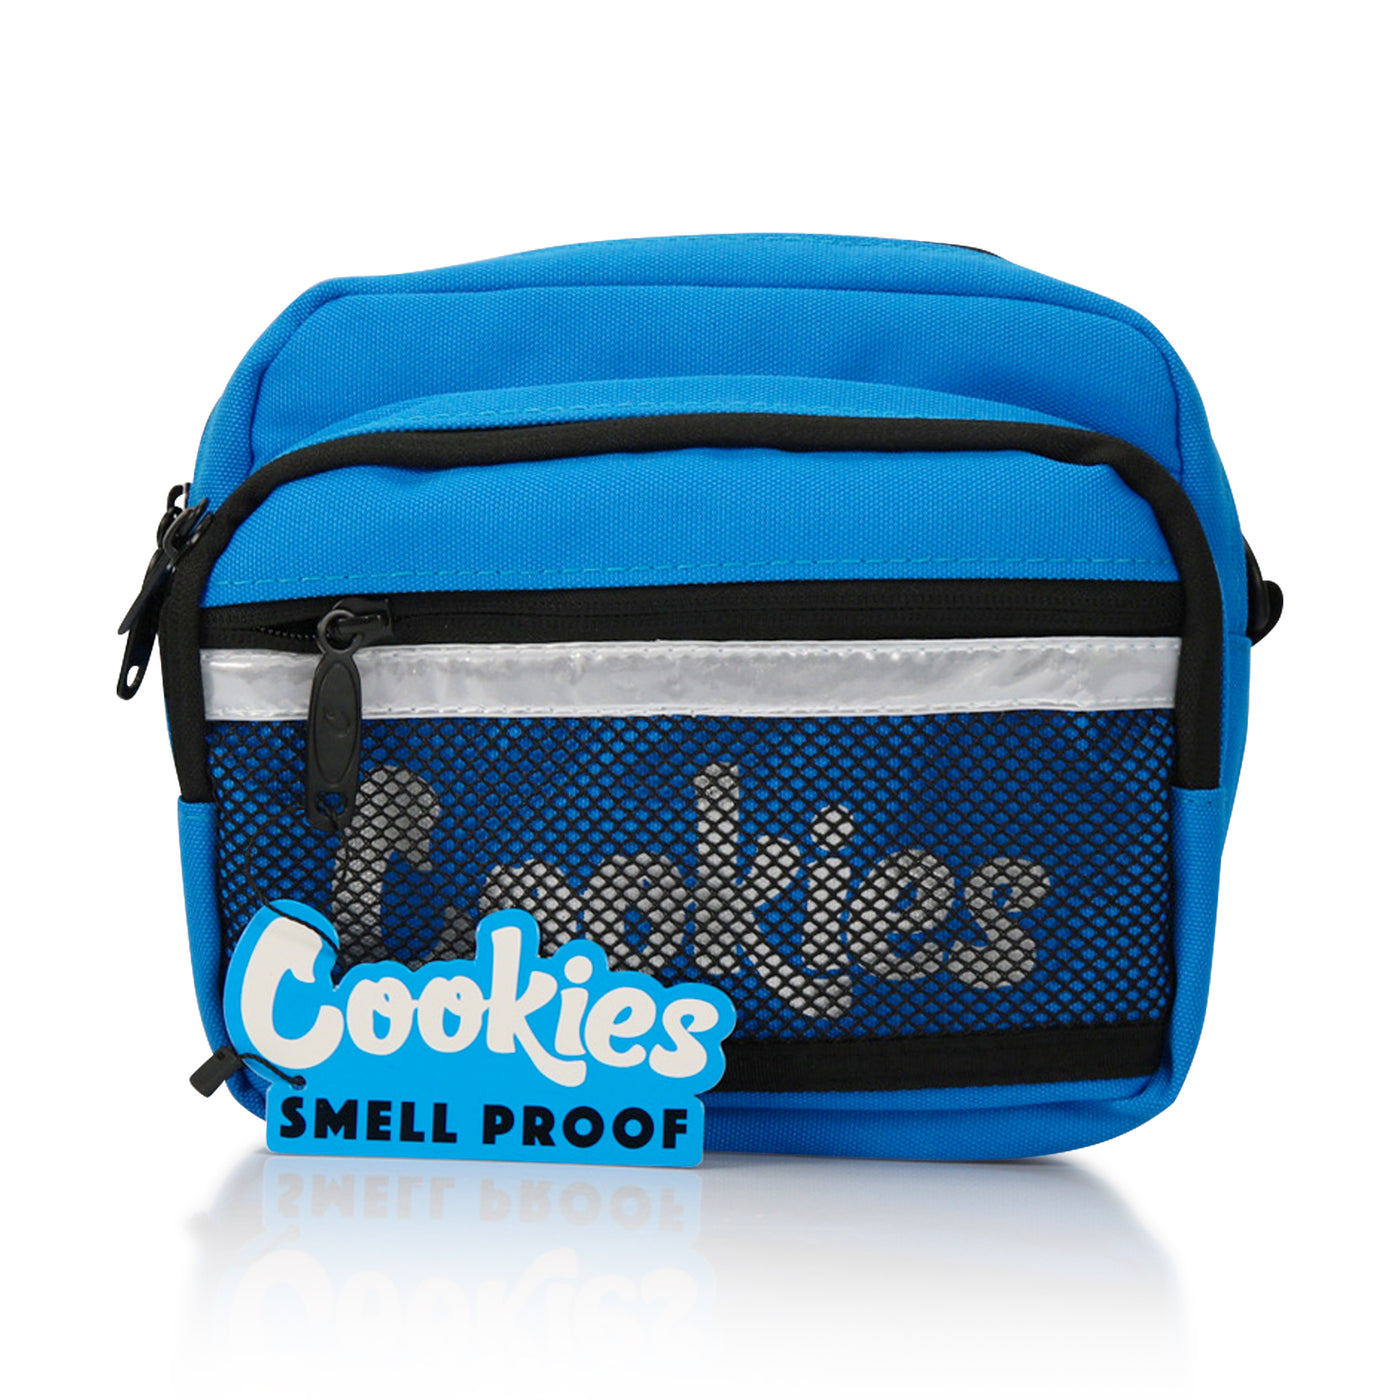 Cookies Ripstop Shoulder Bag